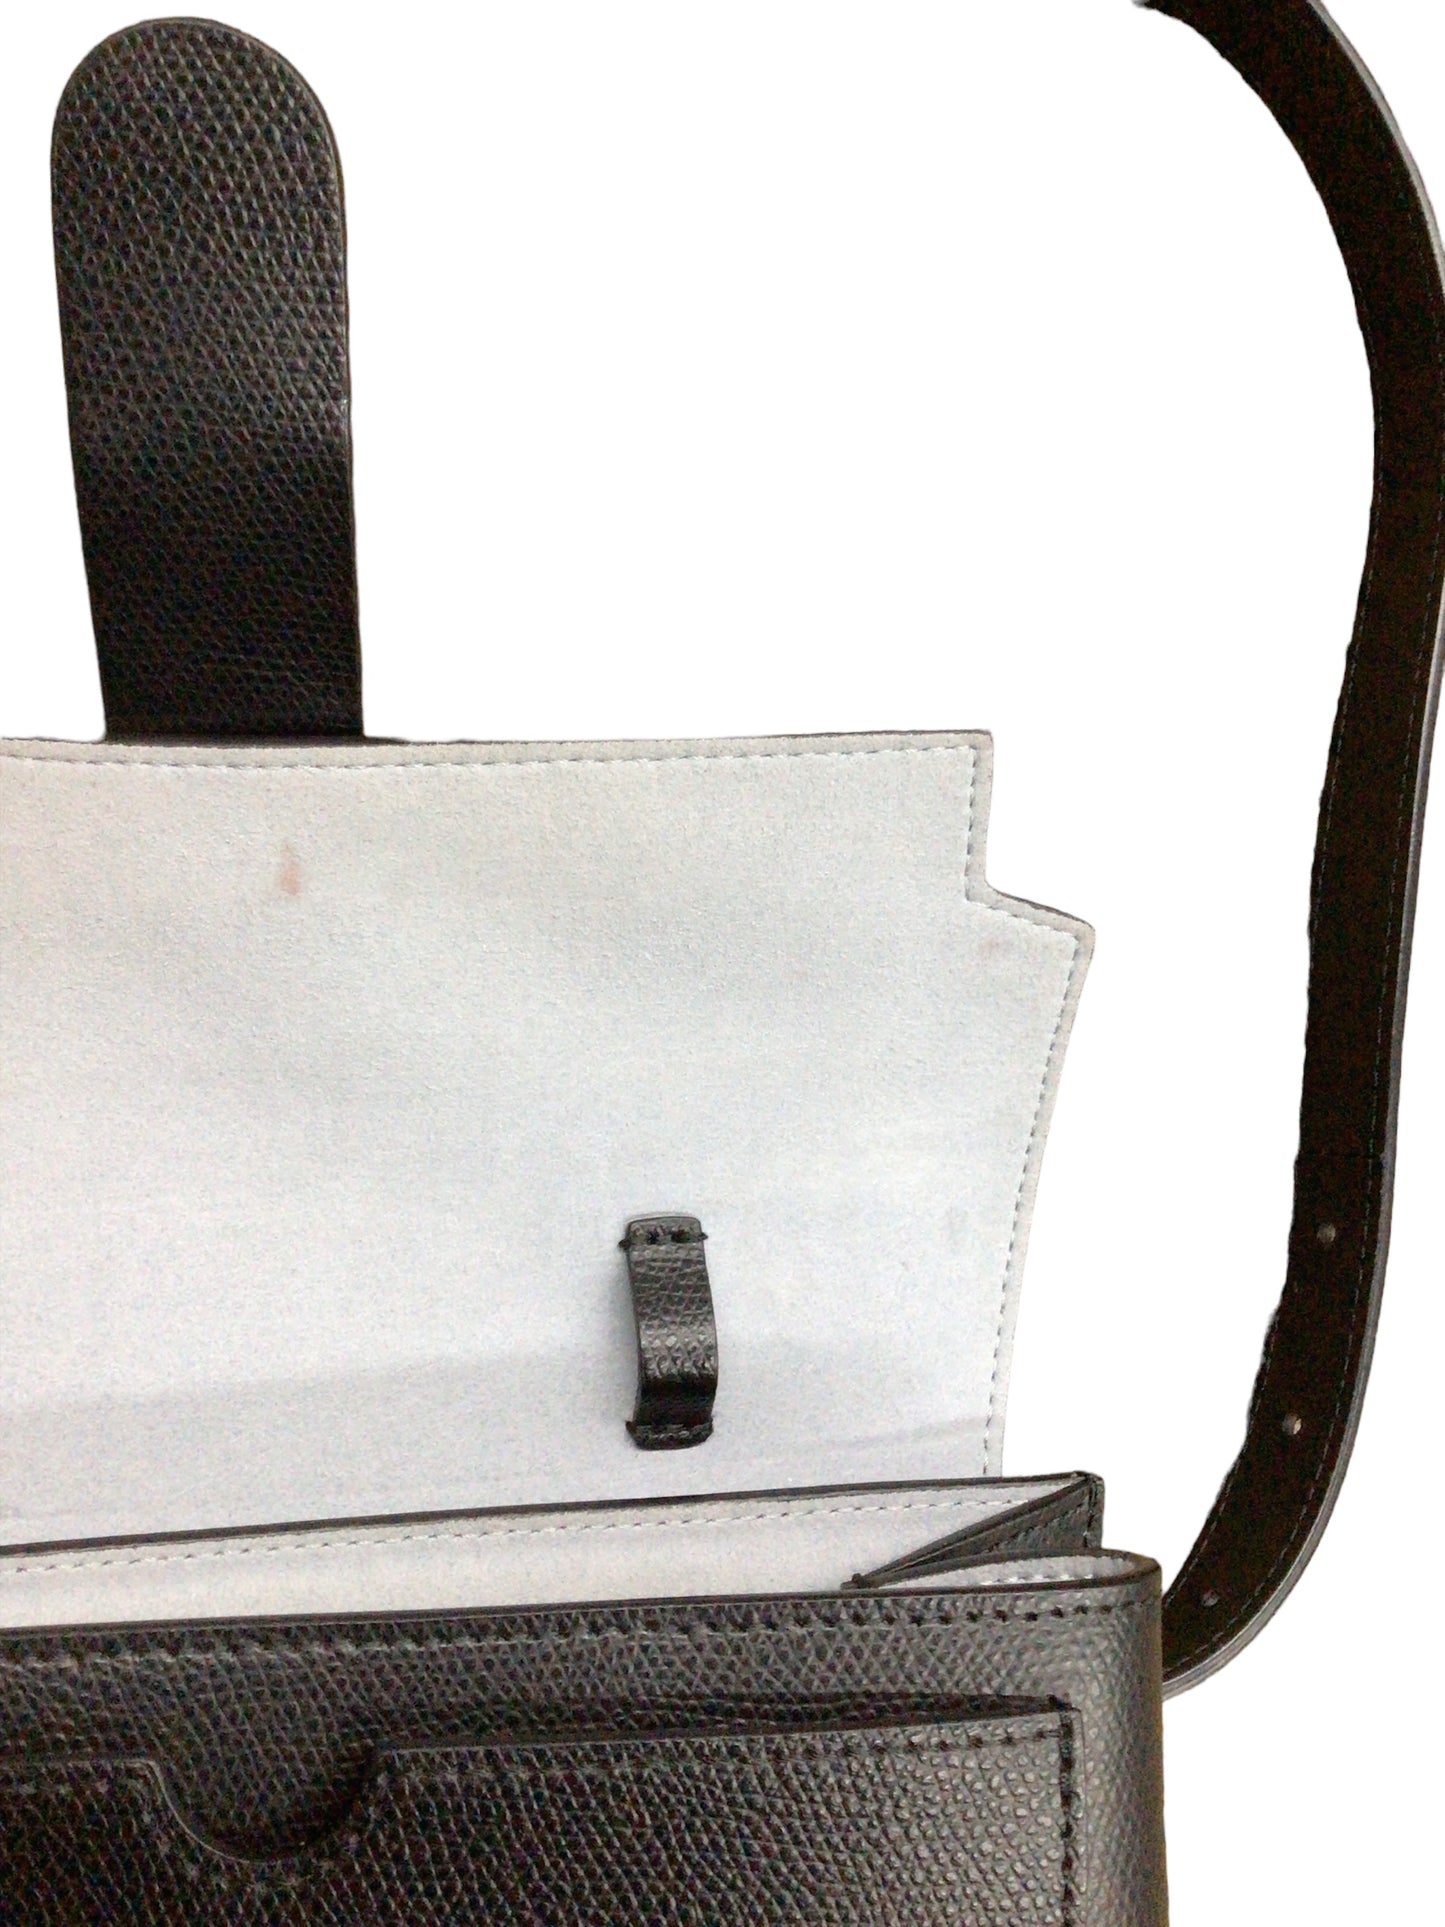 Belt Bag Designer By Senreve  Size: Small